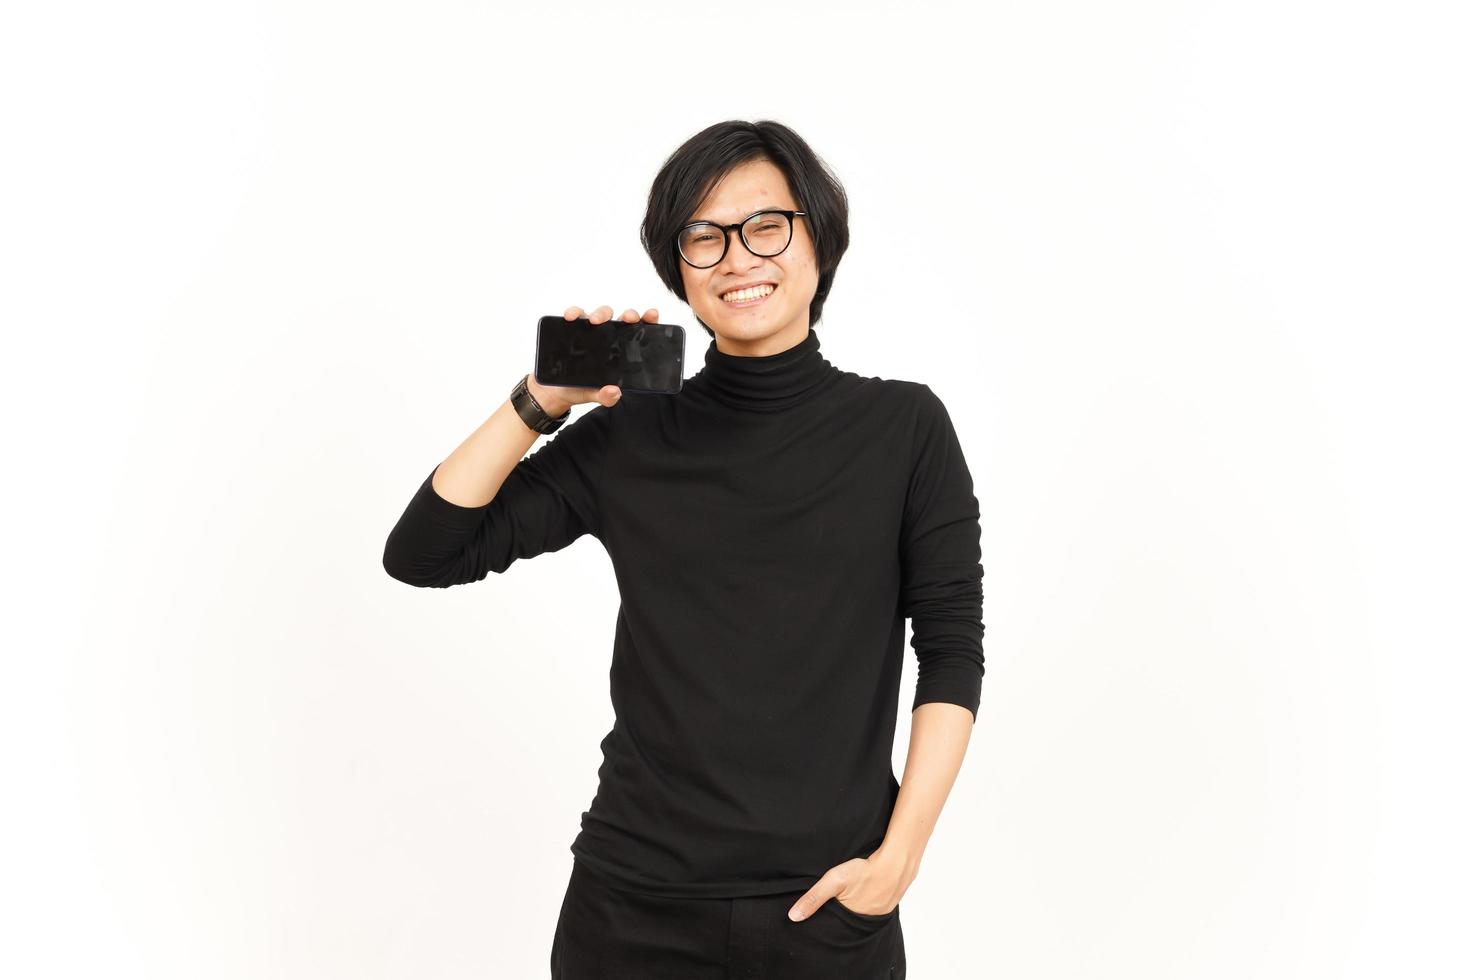 zeigen Apps oder Anzeigen auf leer Bildschirm Smartphone von gut aussehend asiatisch Mann isoliert auf Weiß Hintergrund foto